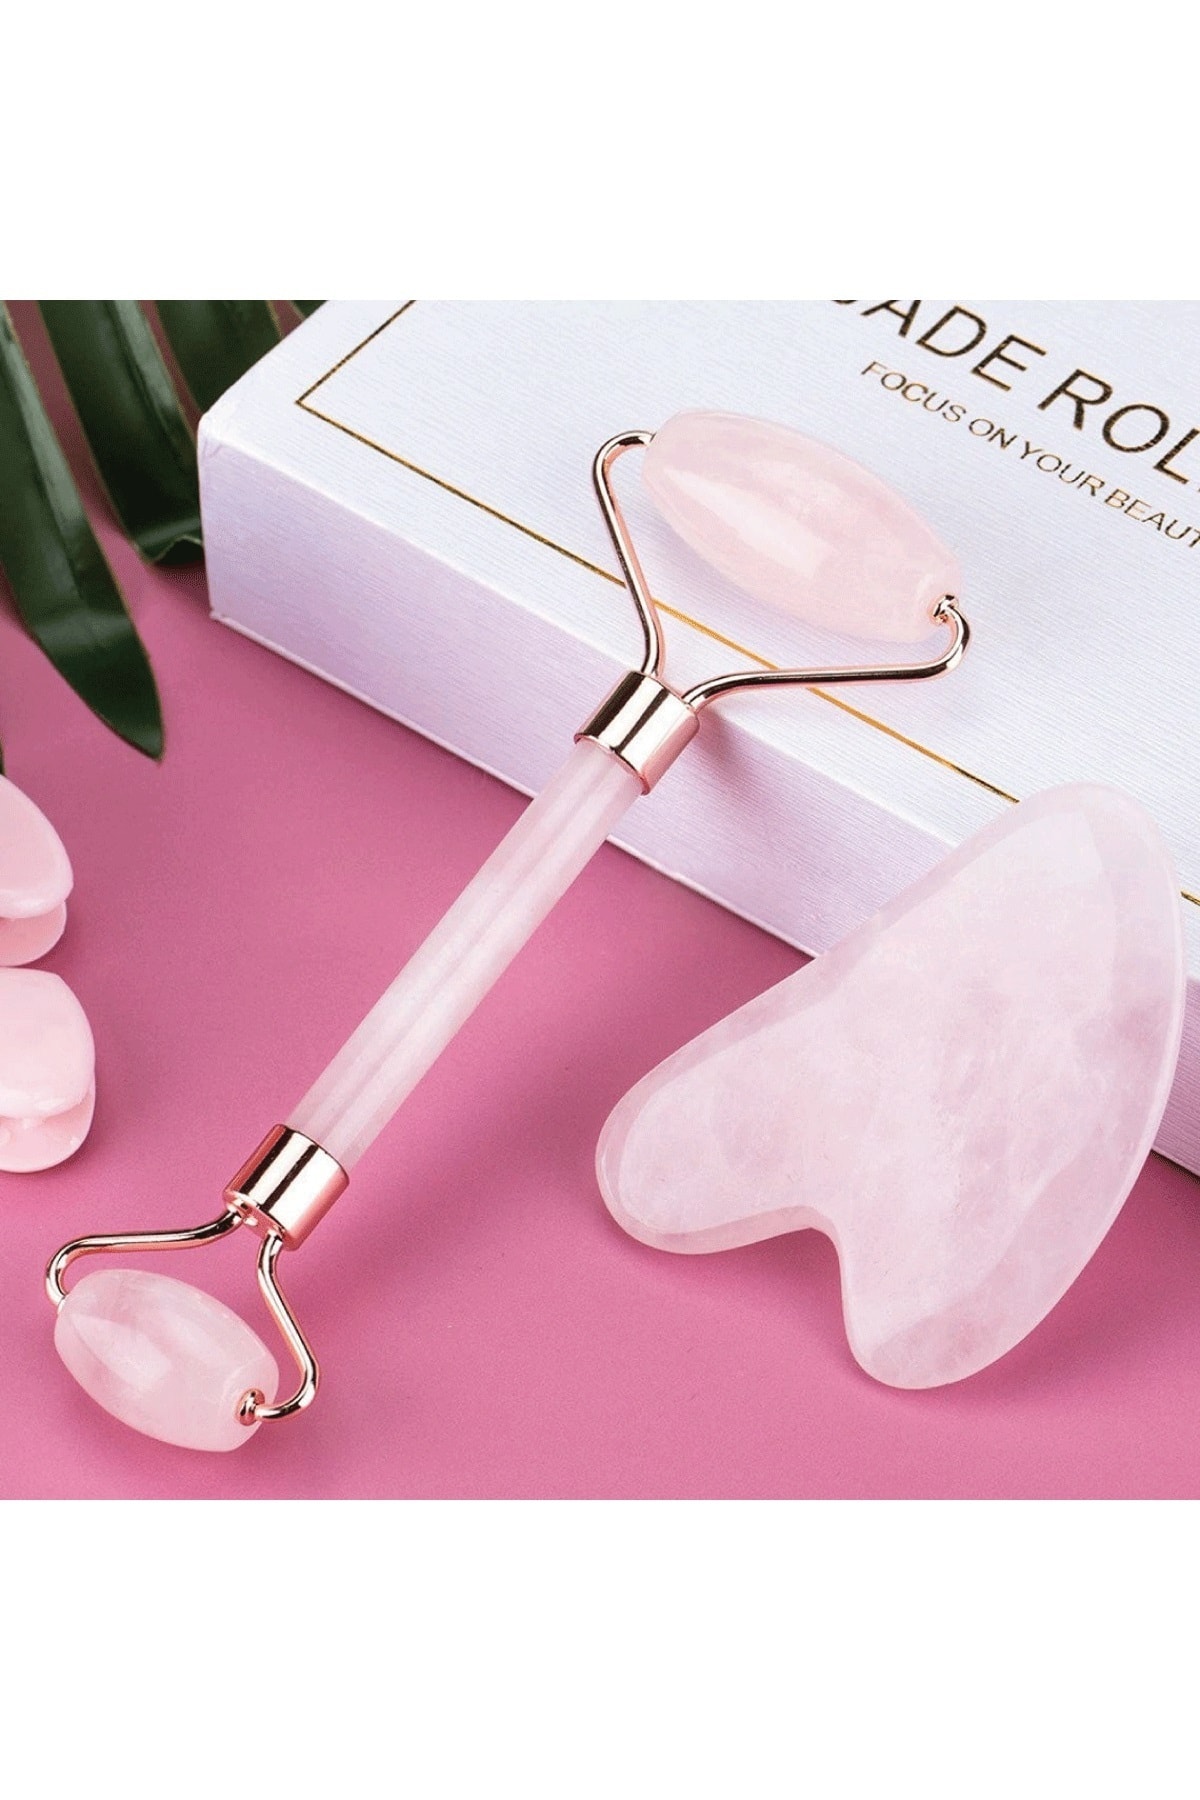 Pembe Kuvars Jade Face Roller Ve Pembe Kuvars Kalp Gua Sha Yüz Masaj Taşı Premium Set